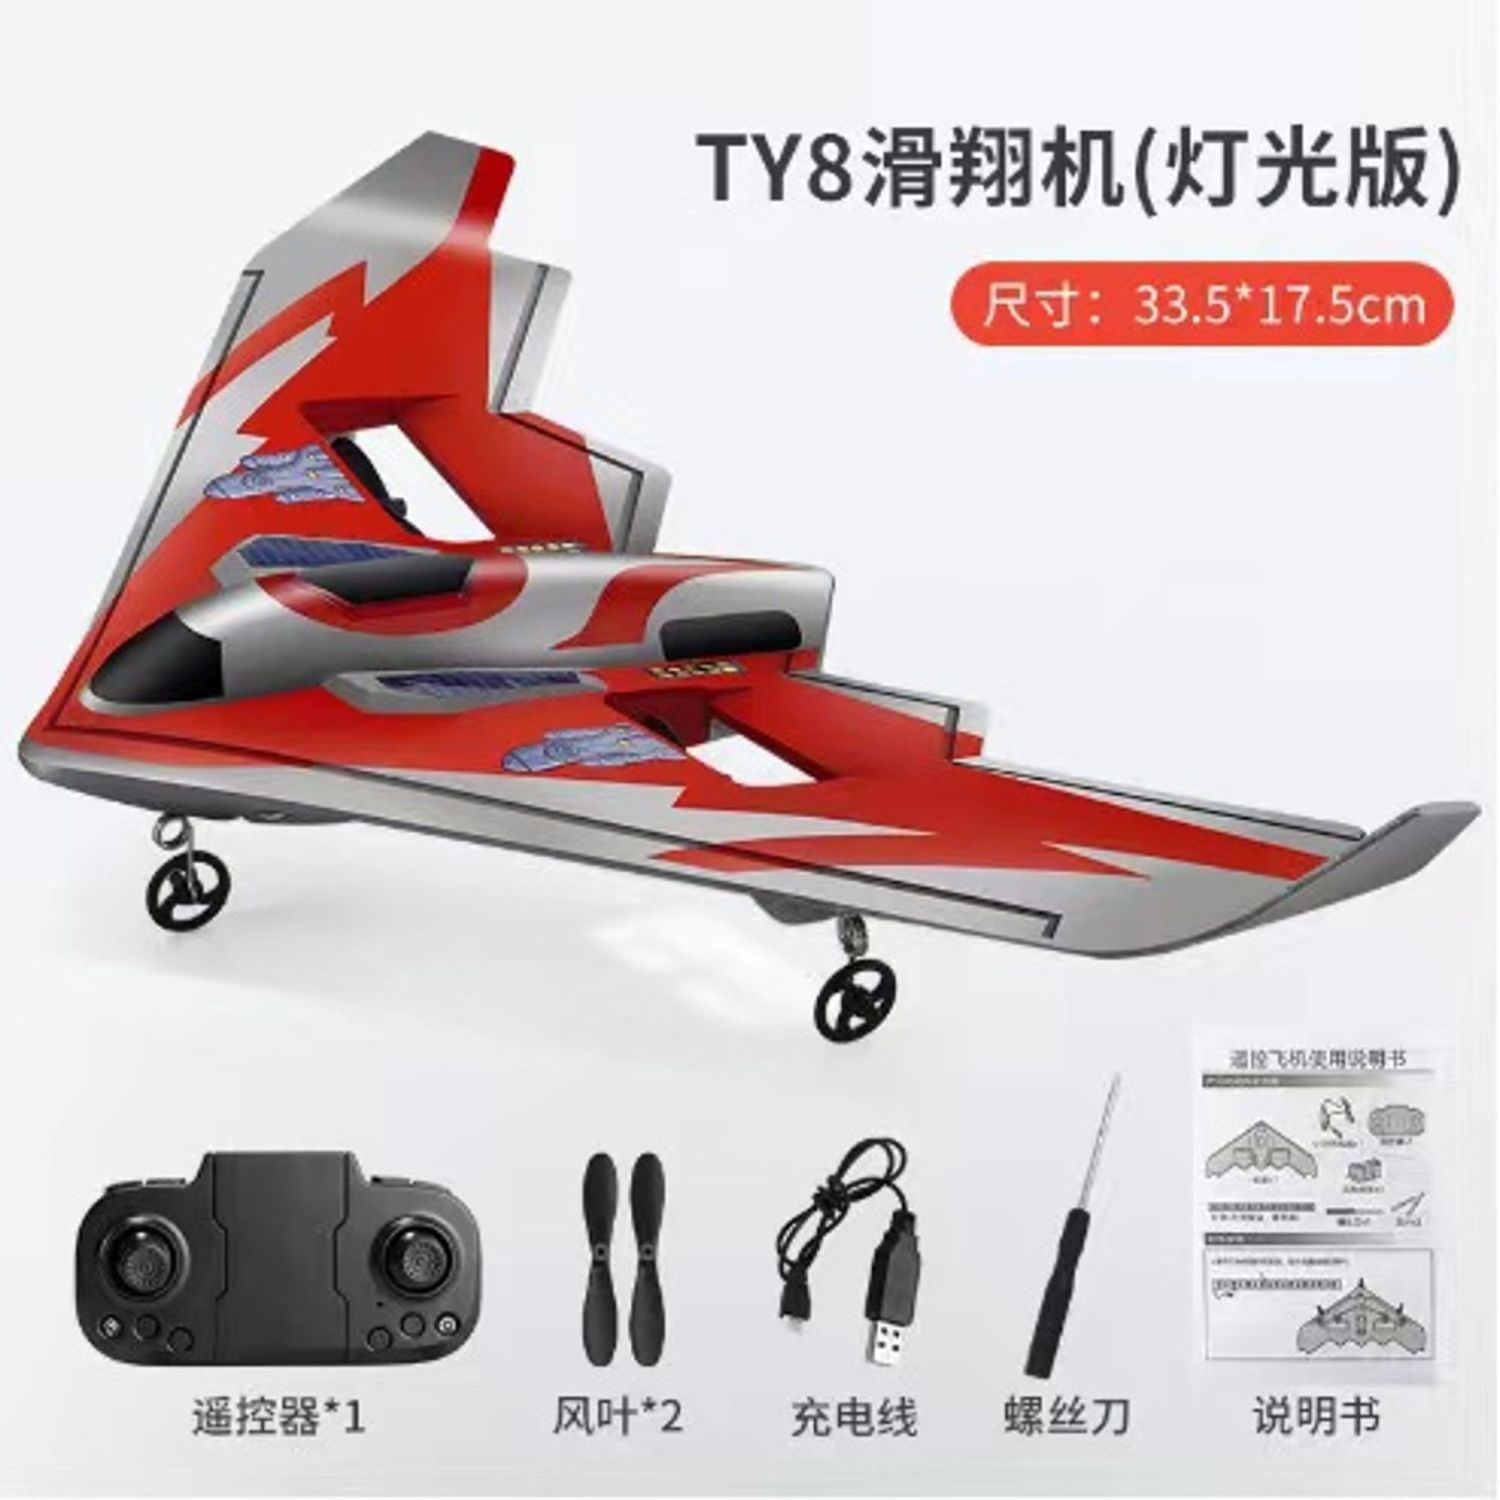 玩具飛機 遙控飛機 航空模型 好玩遙控飛機 三角翼戰斗機 玩具 男孩兒童滑翔耐摔充電固定翼航模